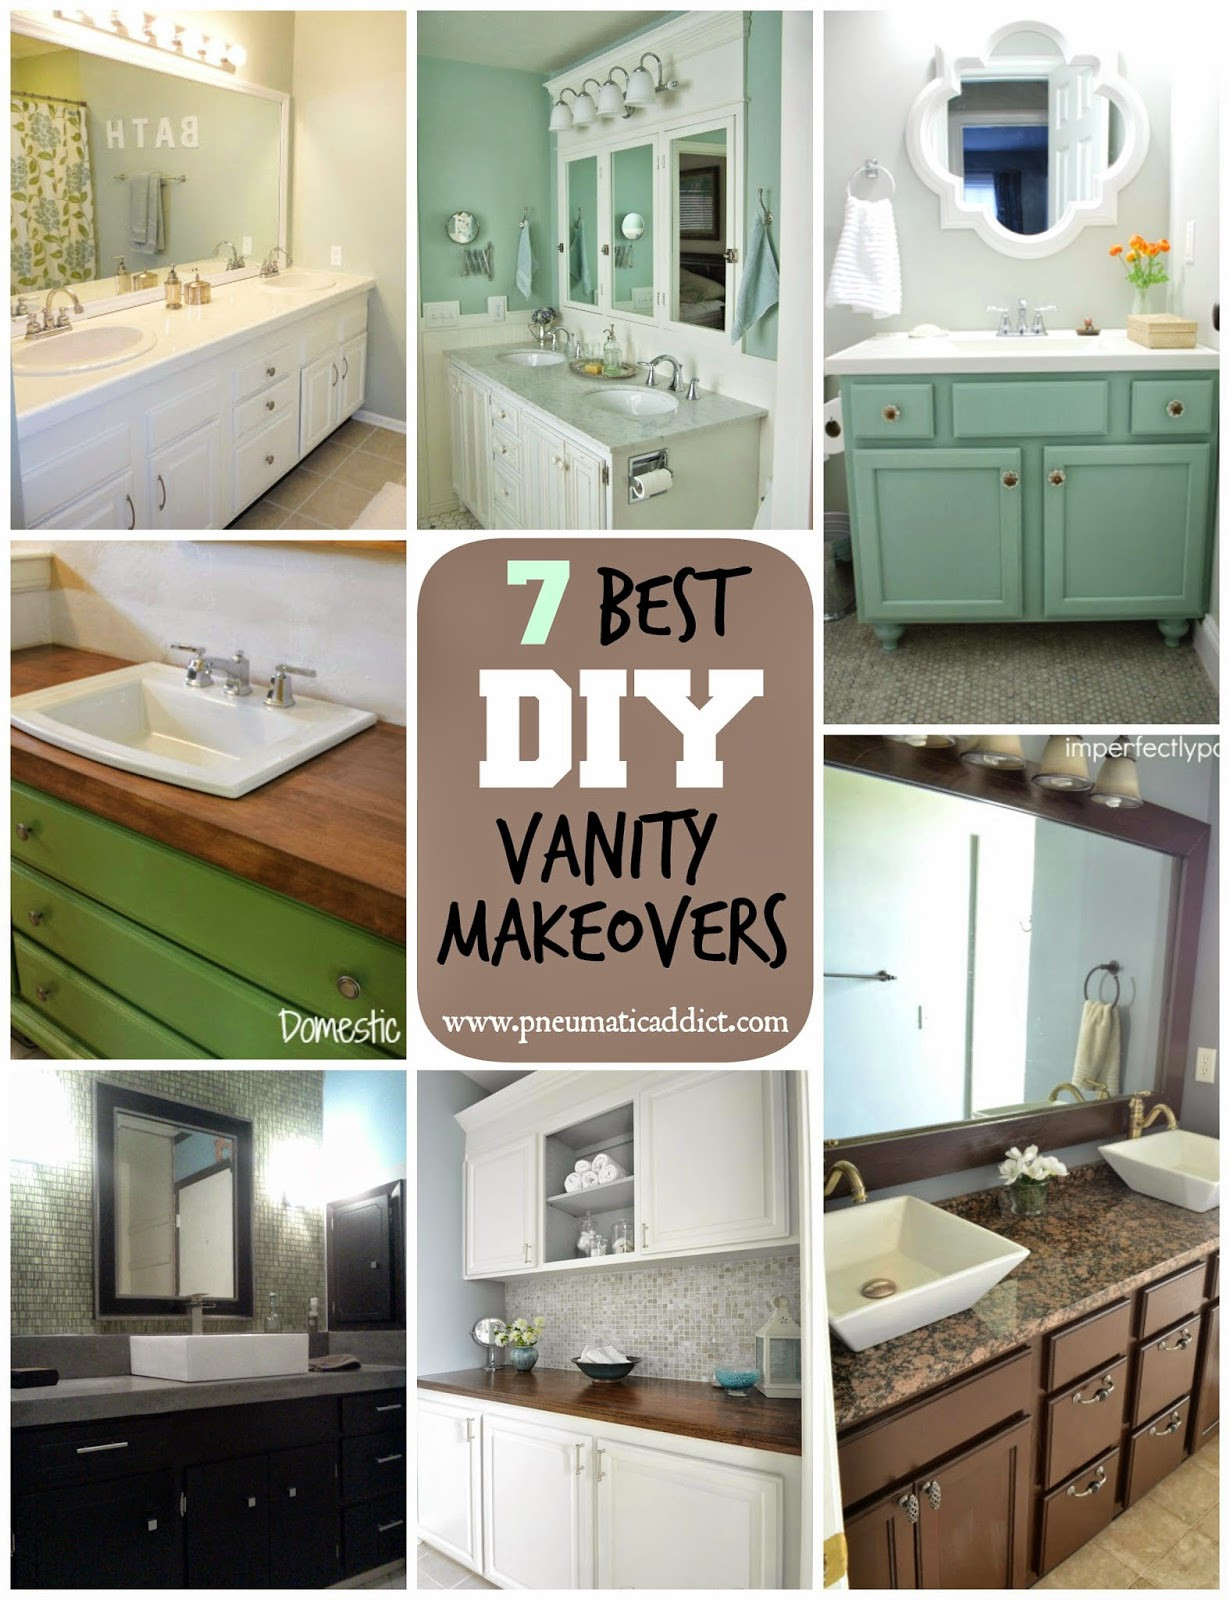 Bathroom Vanity Makeover Ideas
 7 Best DIY Bathroom Vanity Makeovers